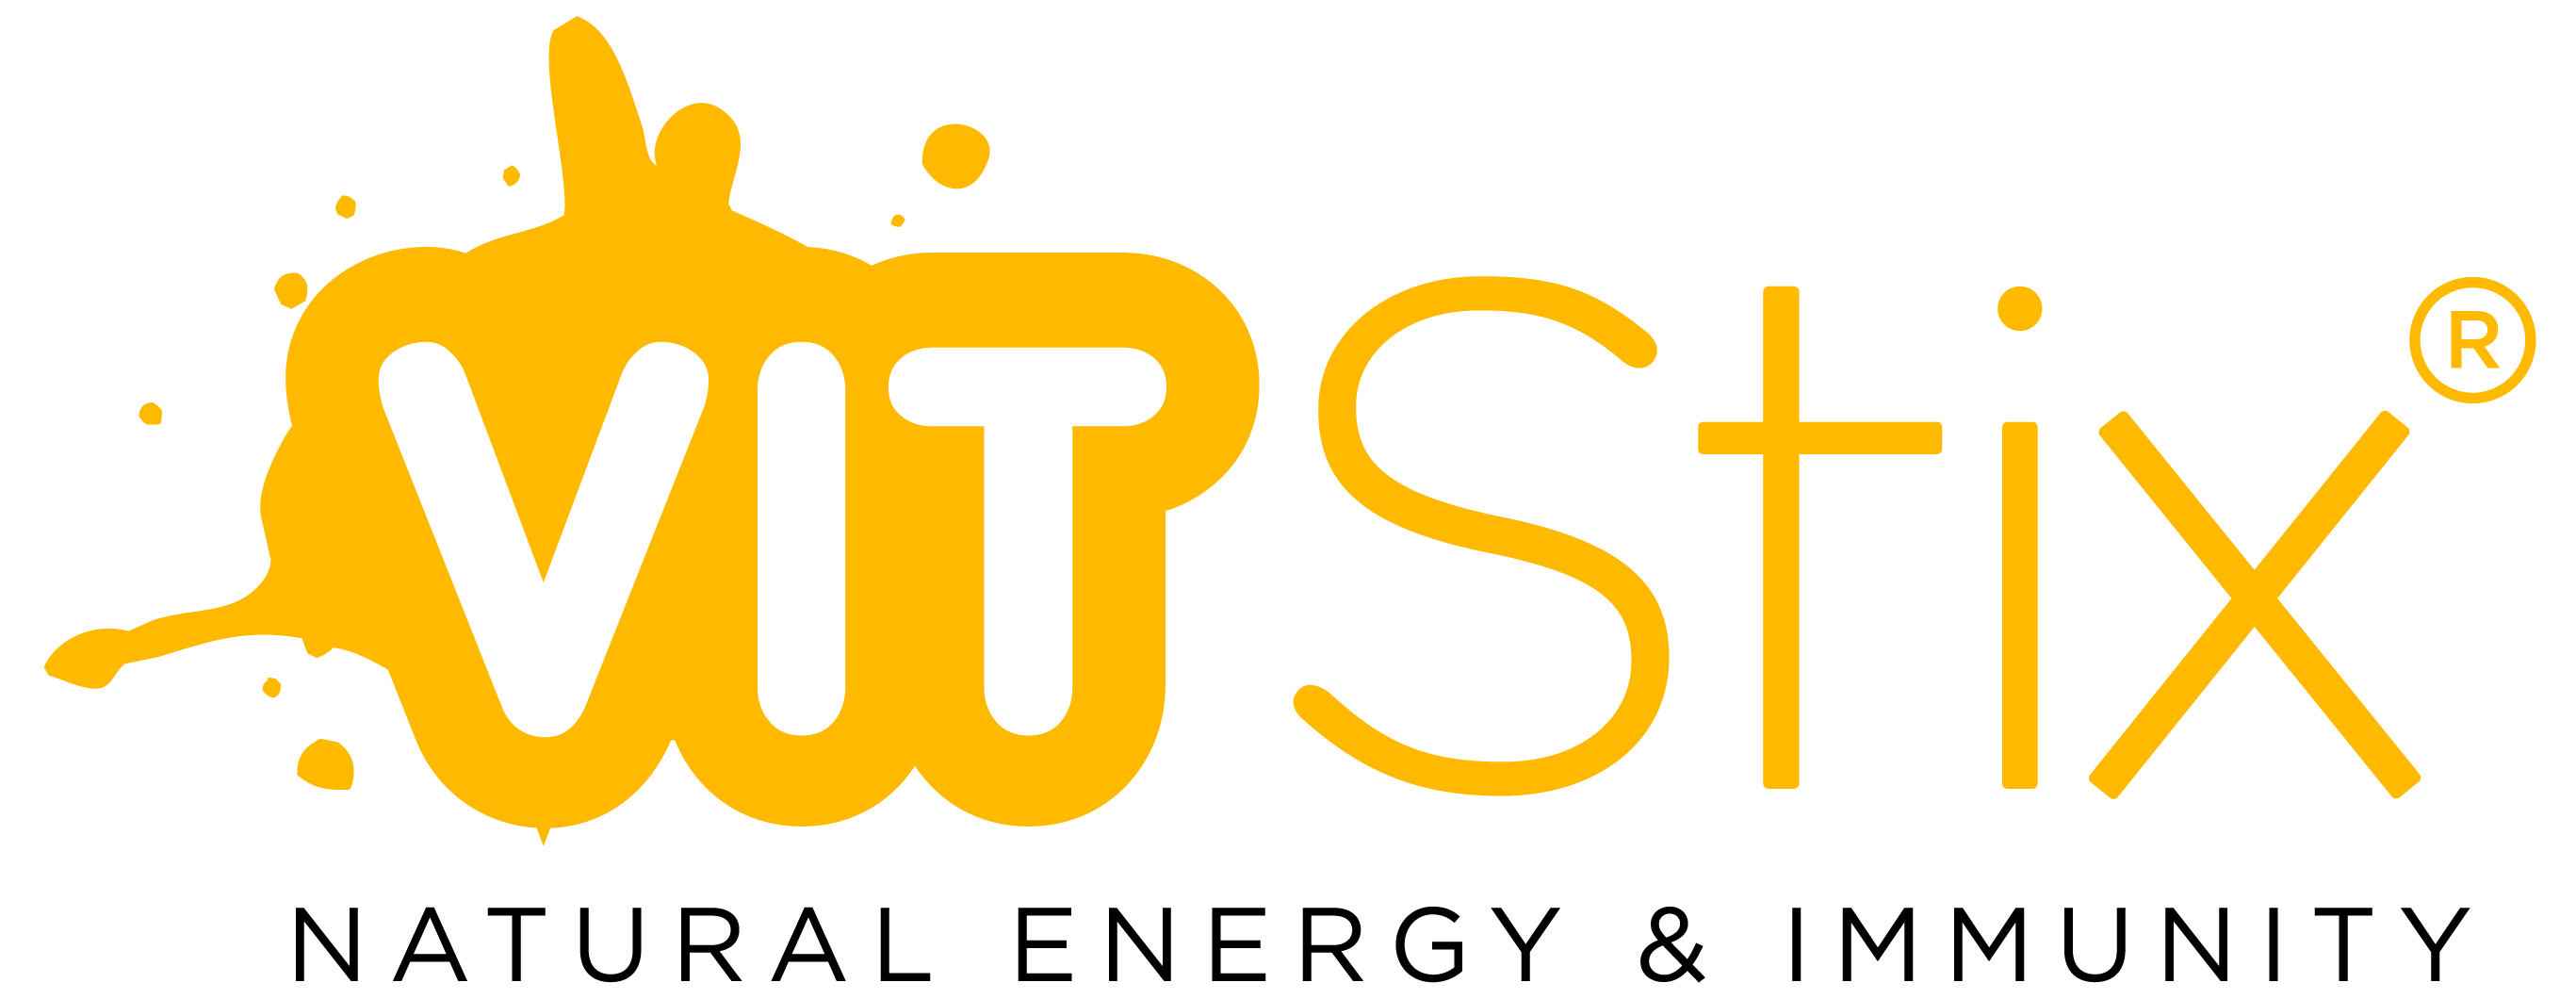 Vit Stix logo